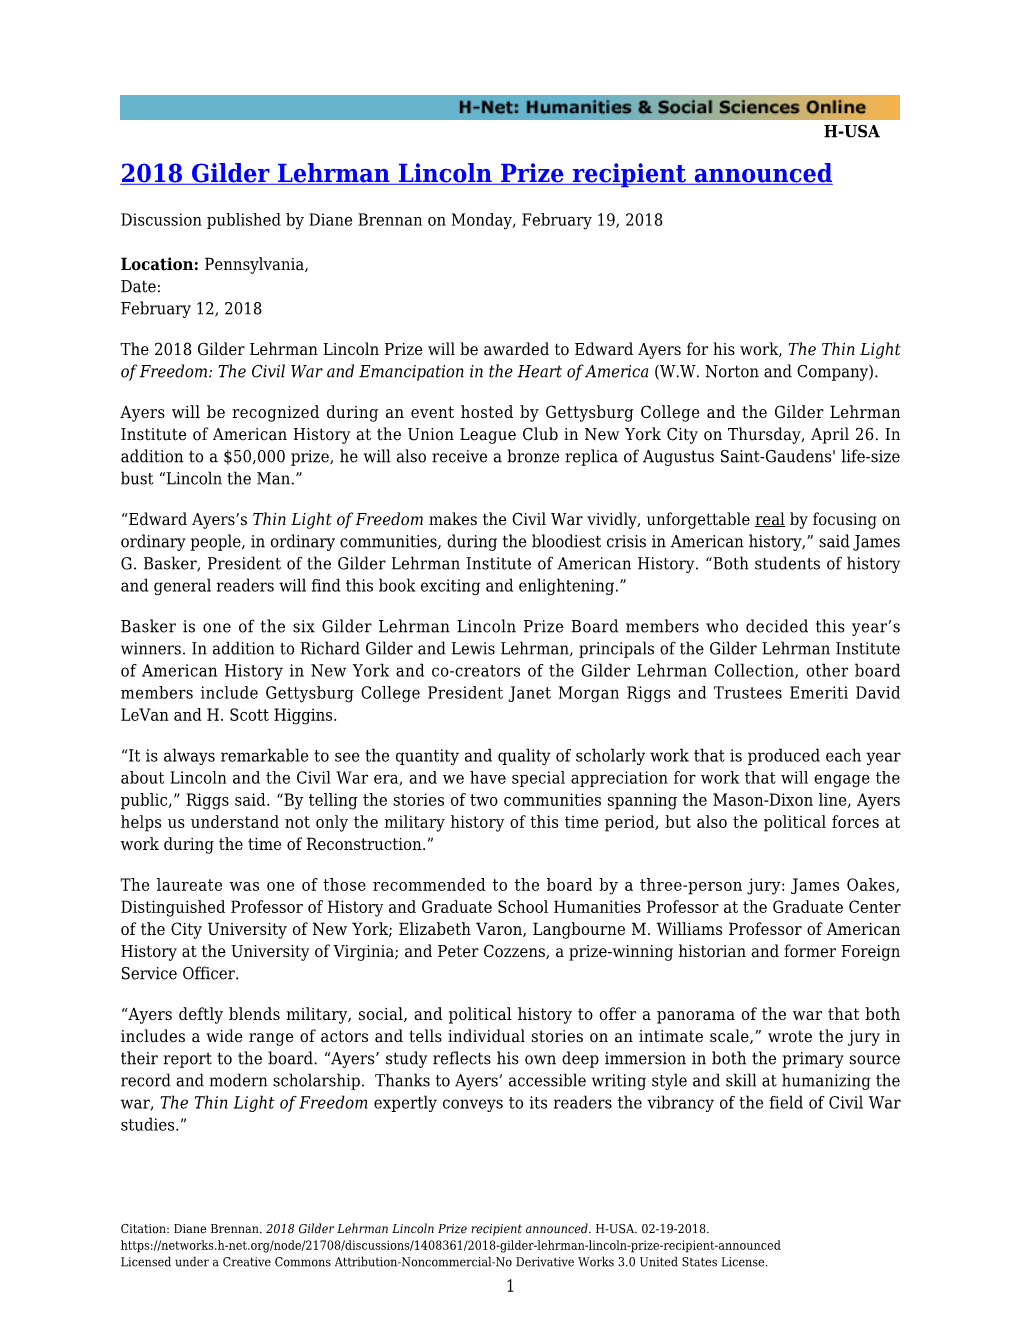 2018 Gilder Lehrman Lincoln Prize Recipient Announced